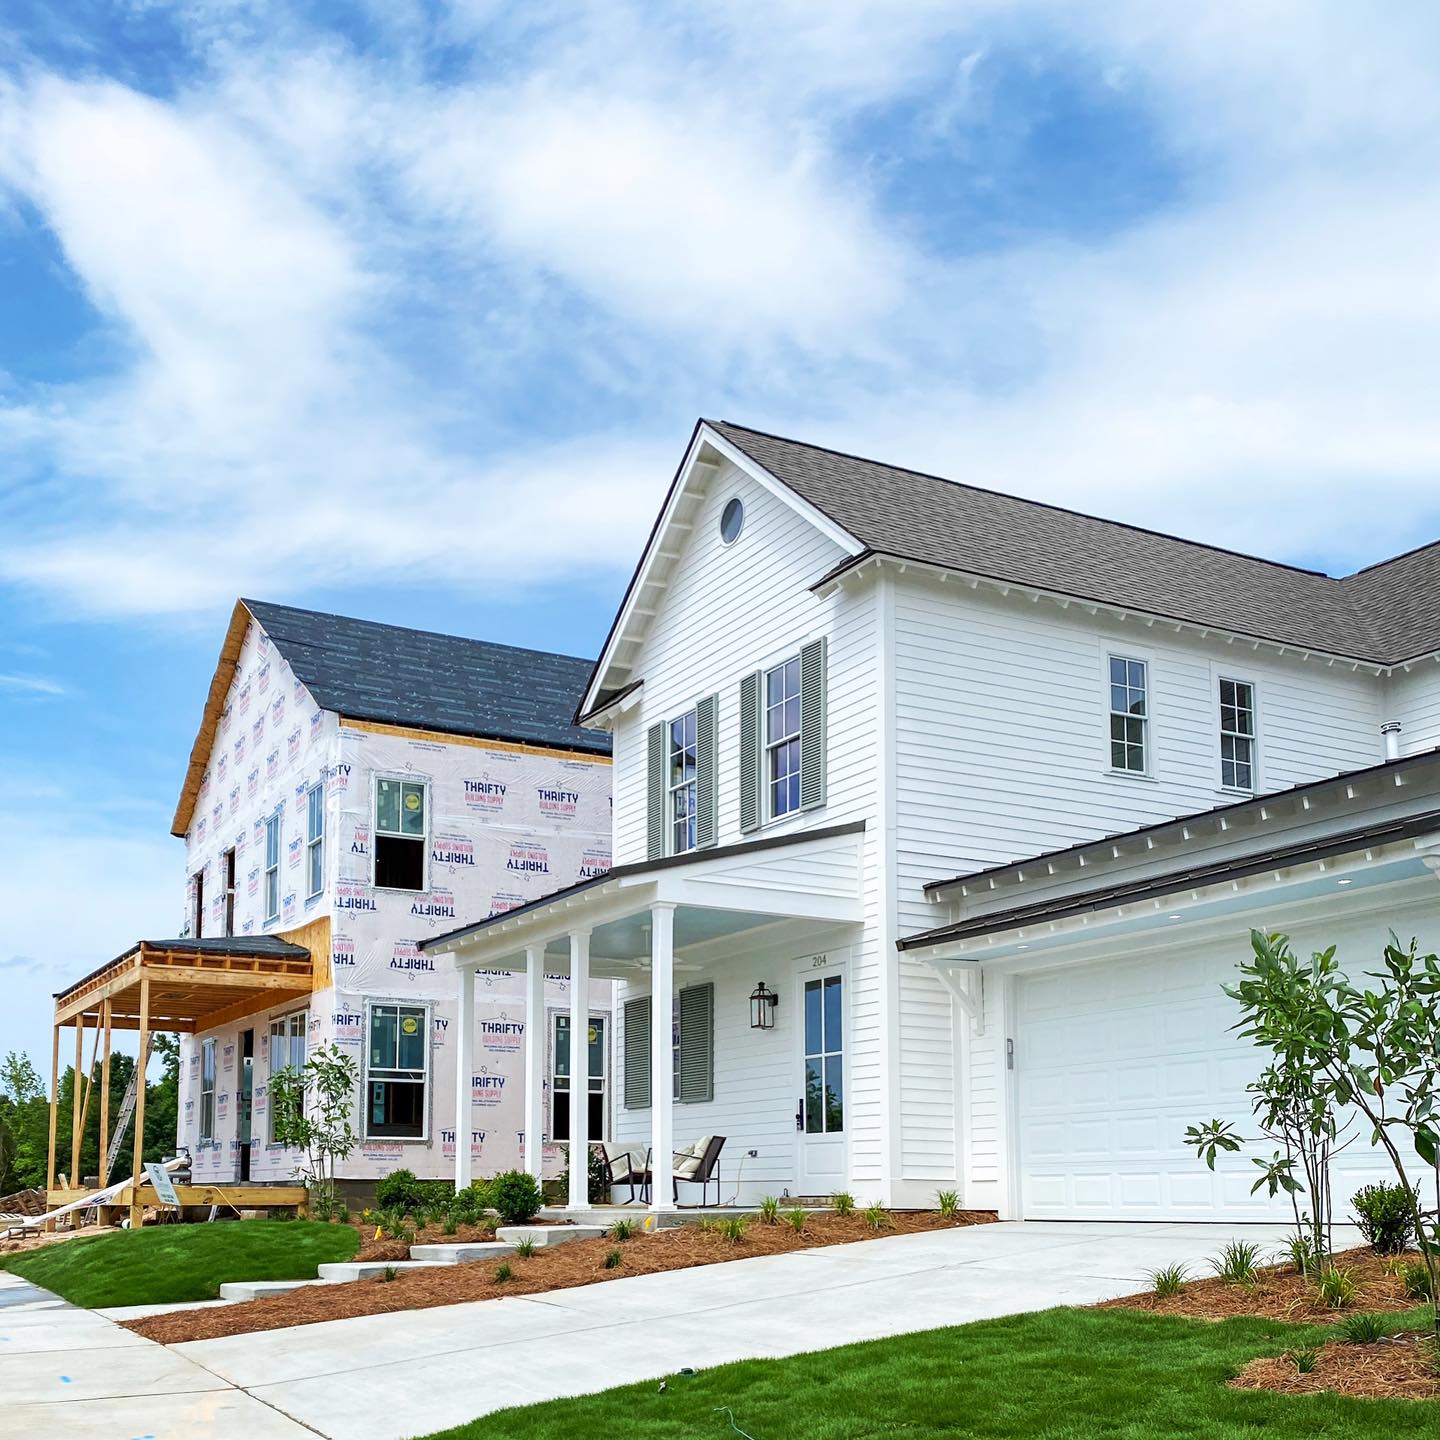 Senior Living Innovators Zero In On Small Homes, Pocket Neighborhoods - Senior  Housing News